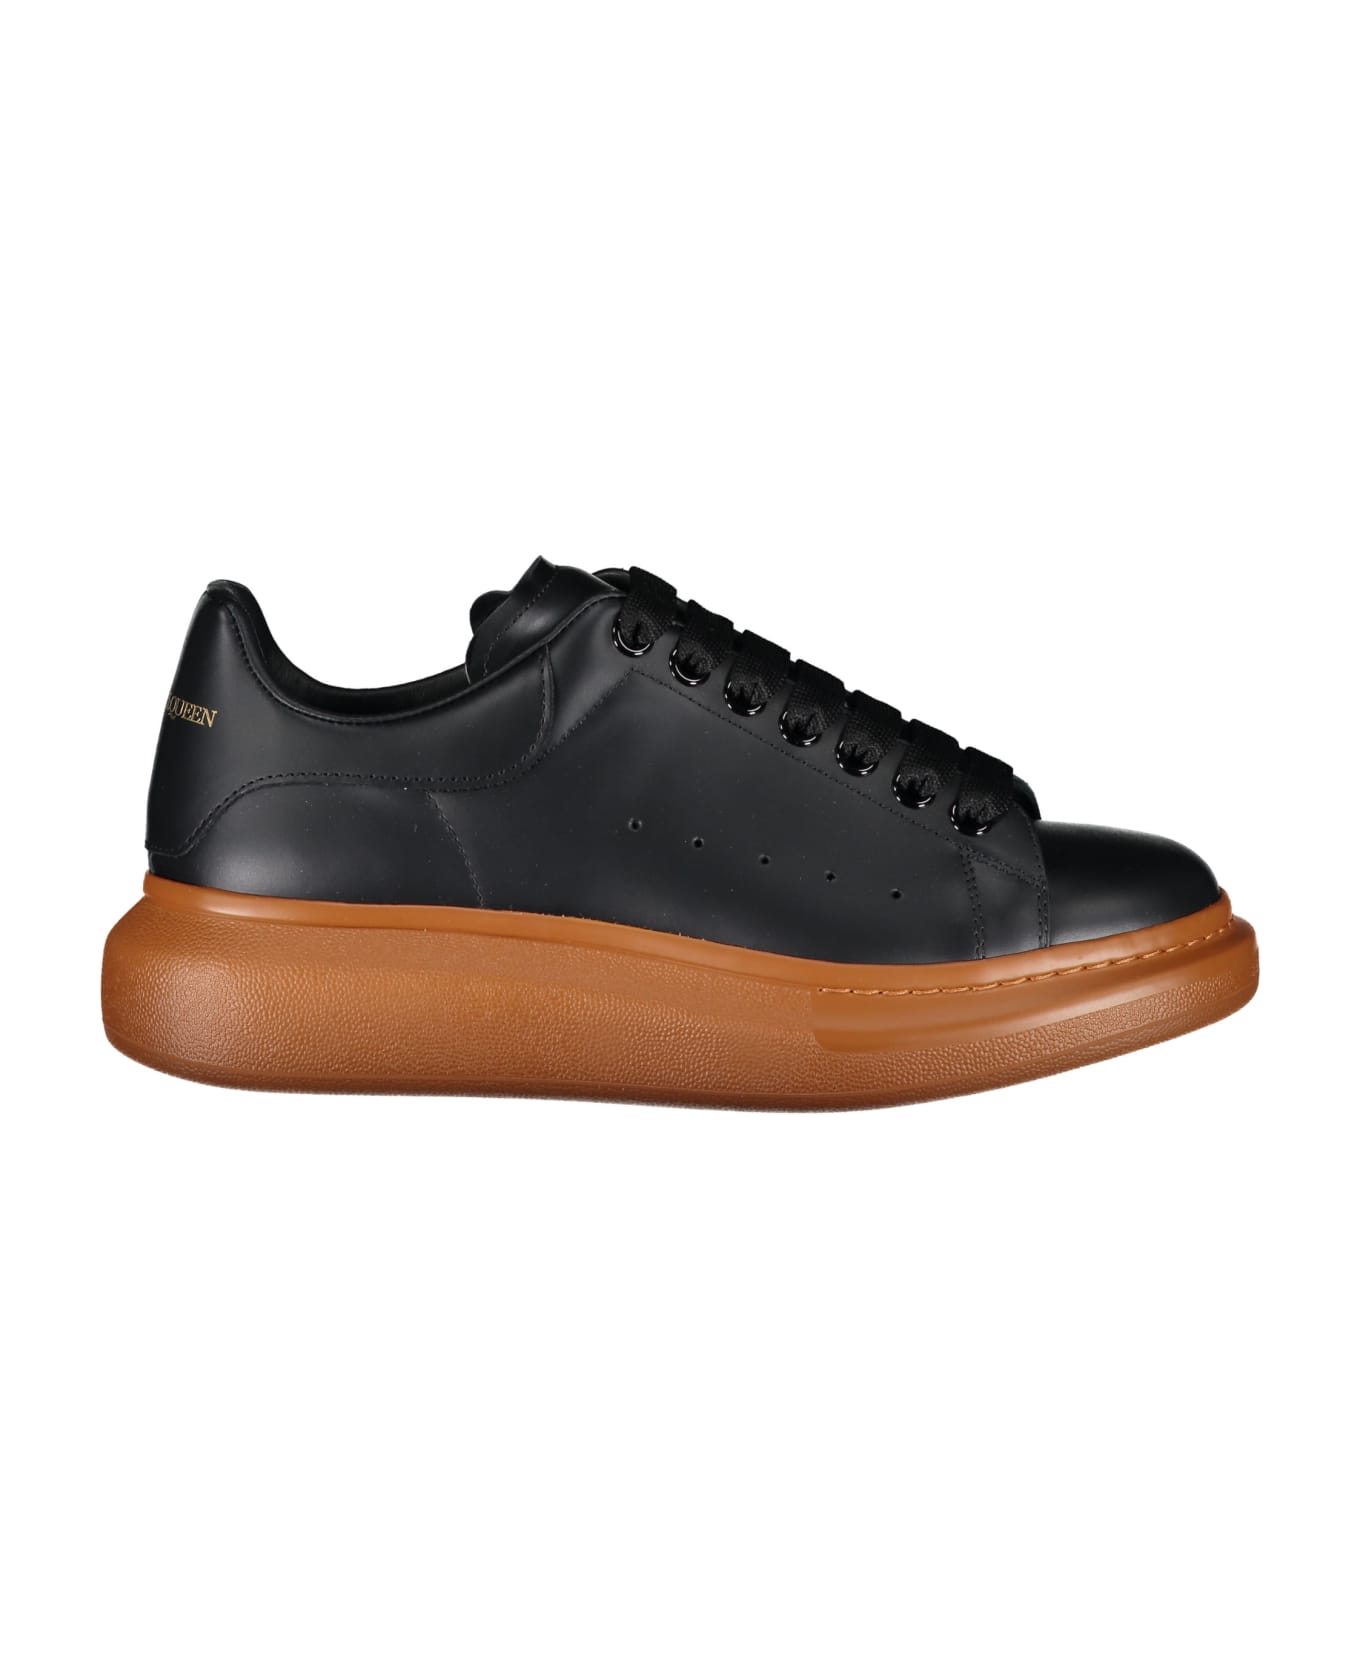 Alexander McQueen Larry Leather Sneakers - black スニーカー